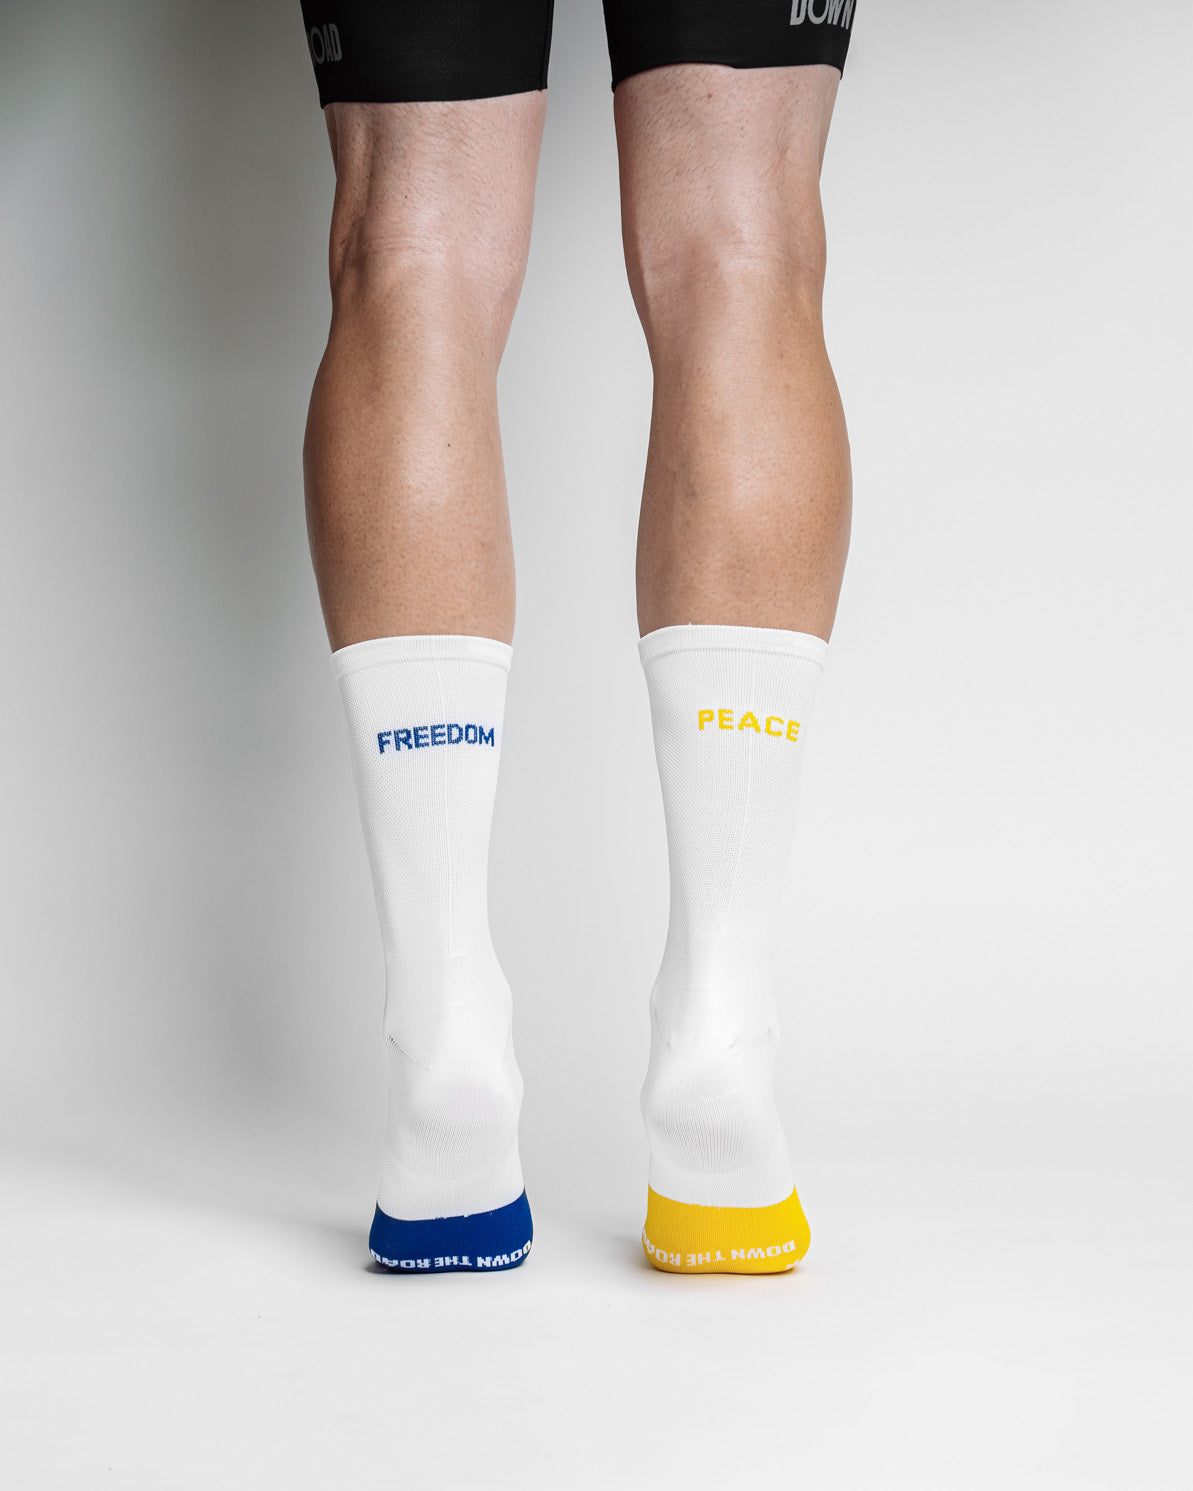 Oekraïne sokken - Vrijheid & Vrede